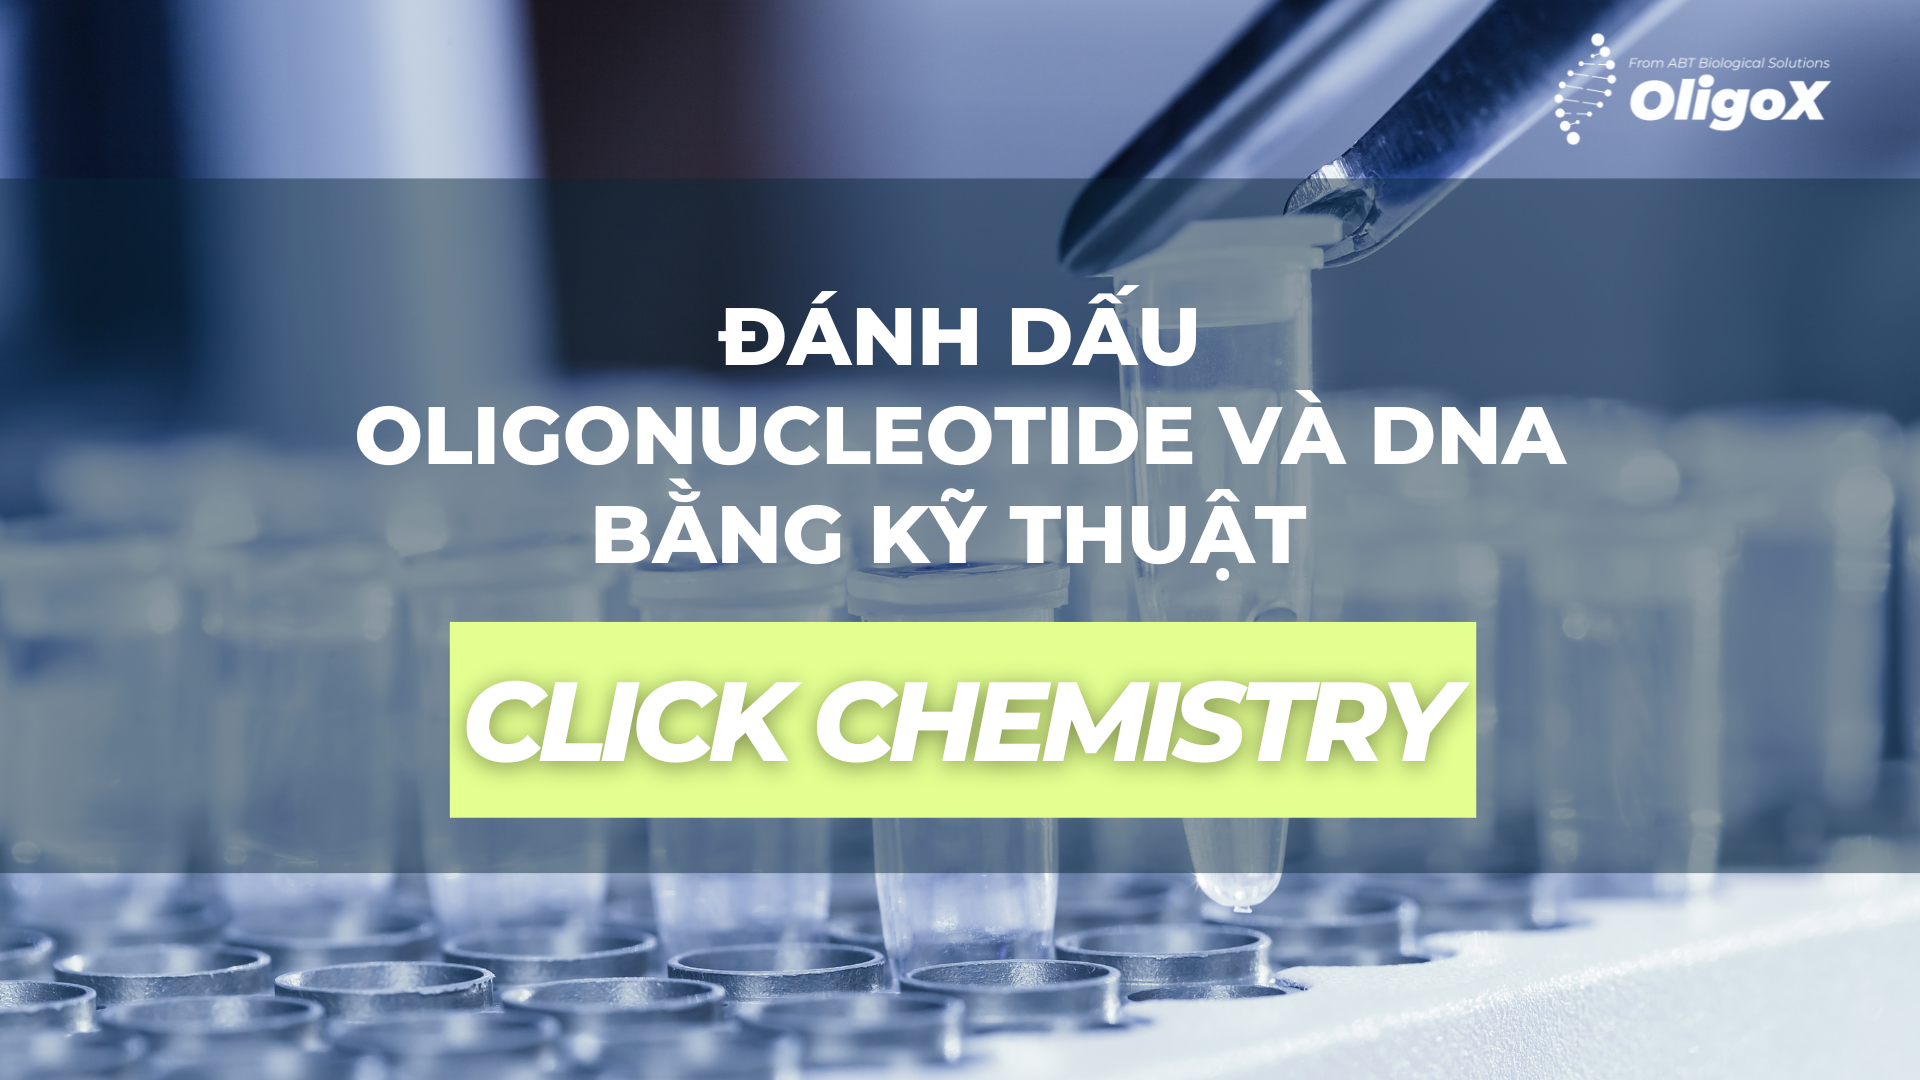 ĐÁNH DẤU OLIGONUCLEOTIDE VÀ DNA BẰNG KỸ THUẬT CLICK CHEMISTRY